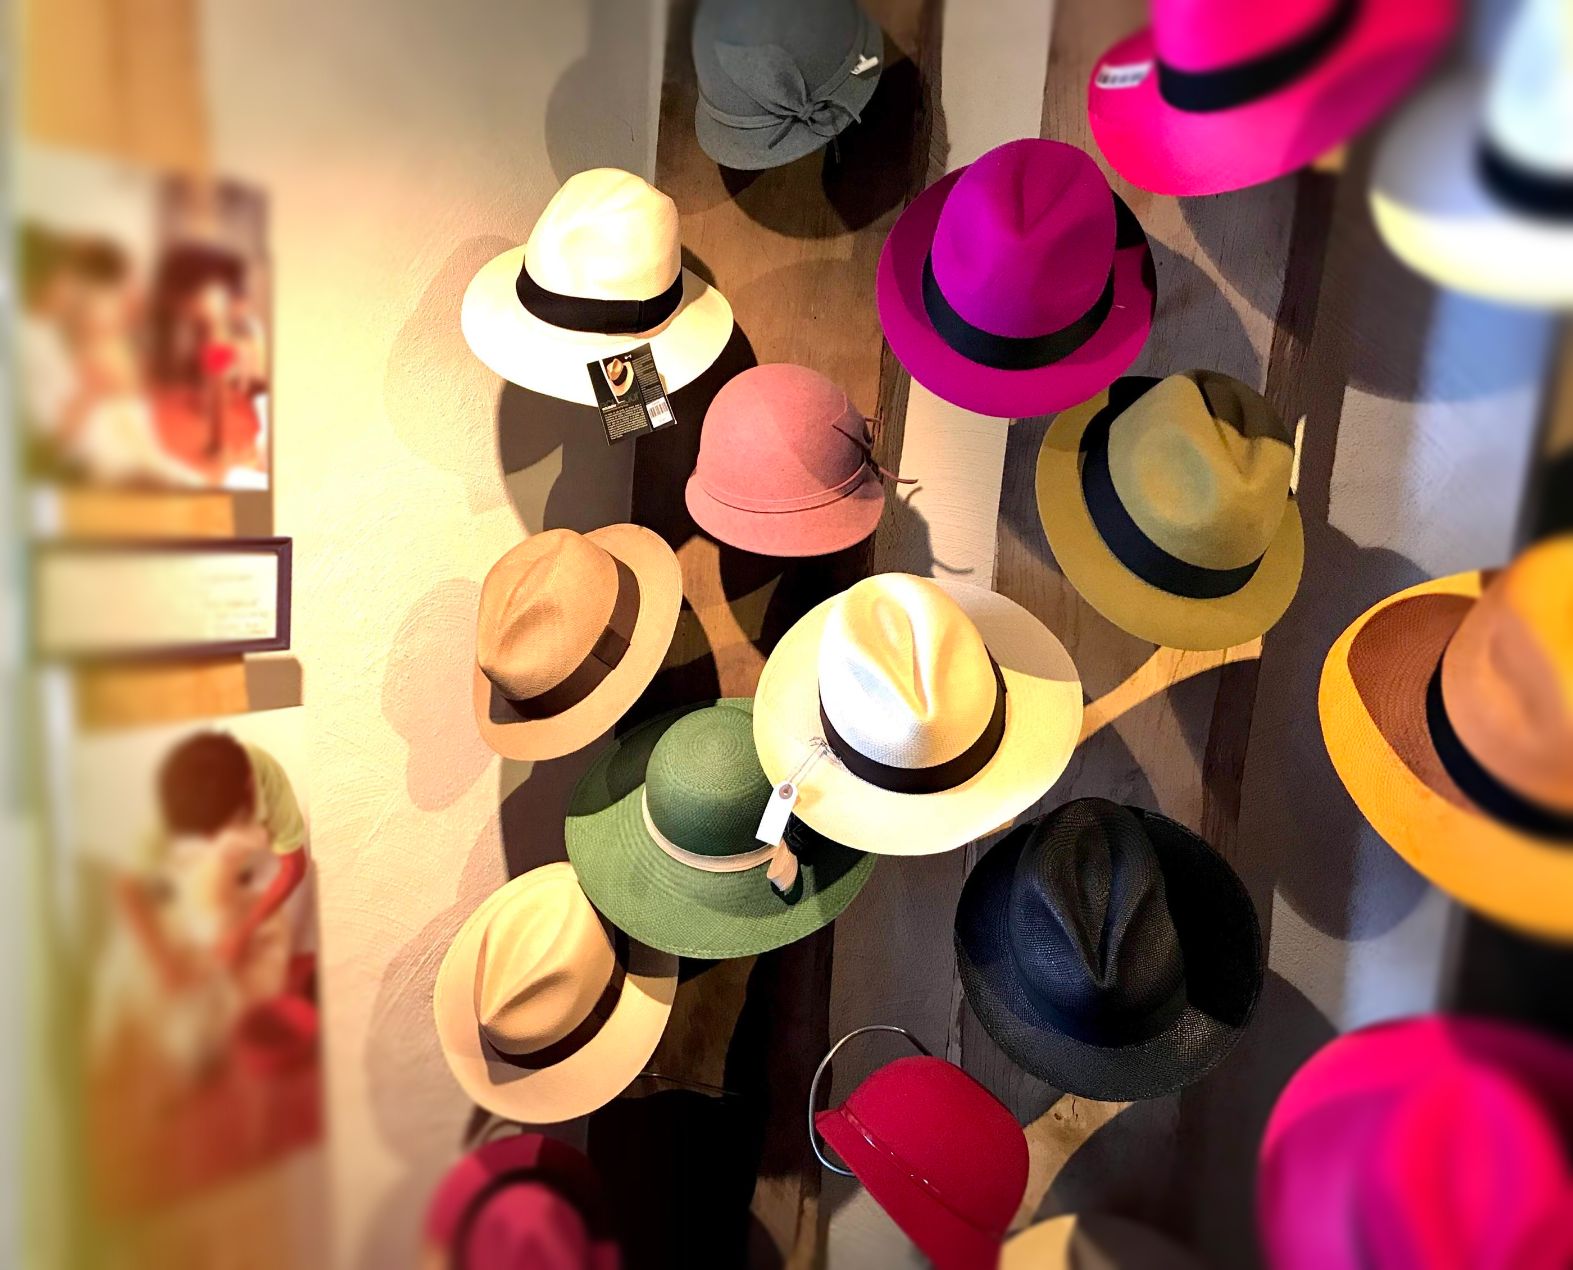 butik, Ecuador, alpacka, panamahatt, Panama hatt, resa, local, cooperative